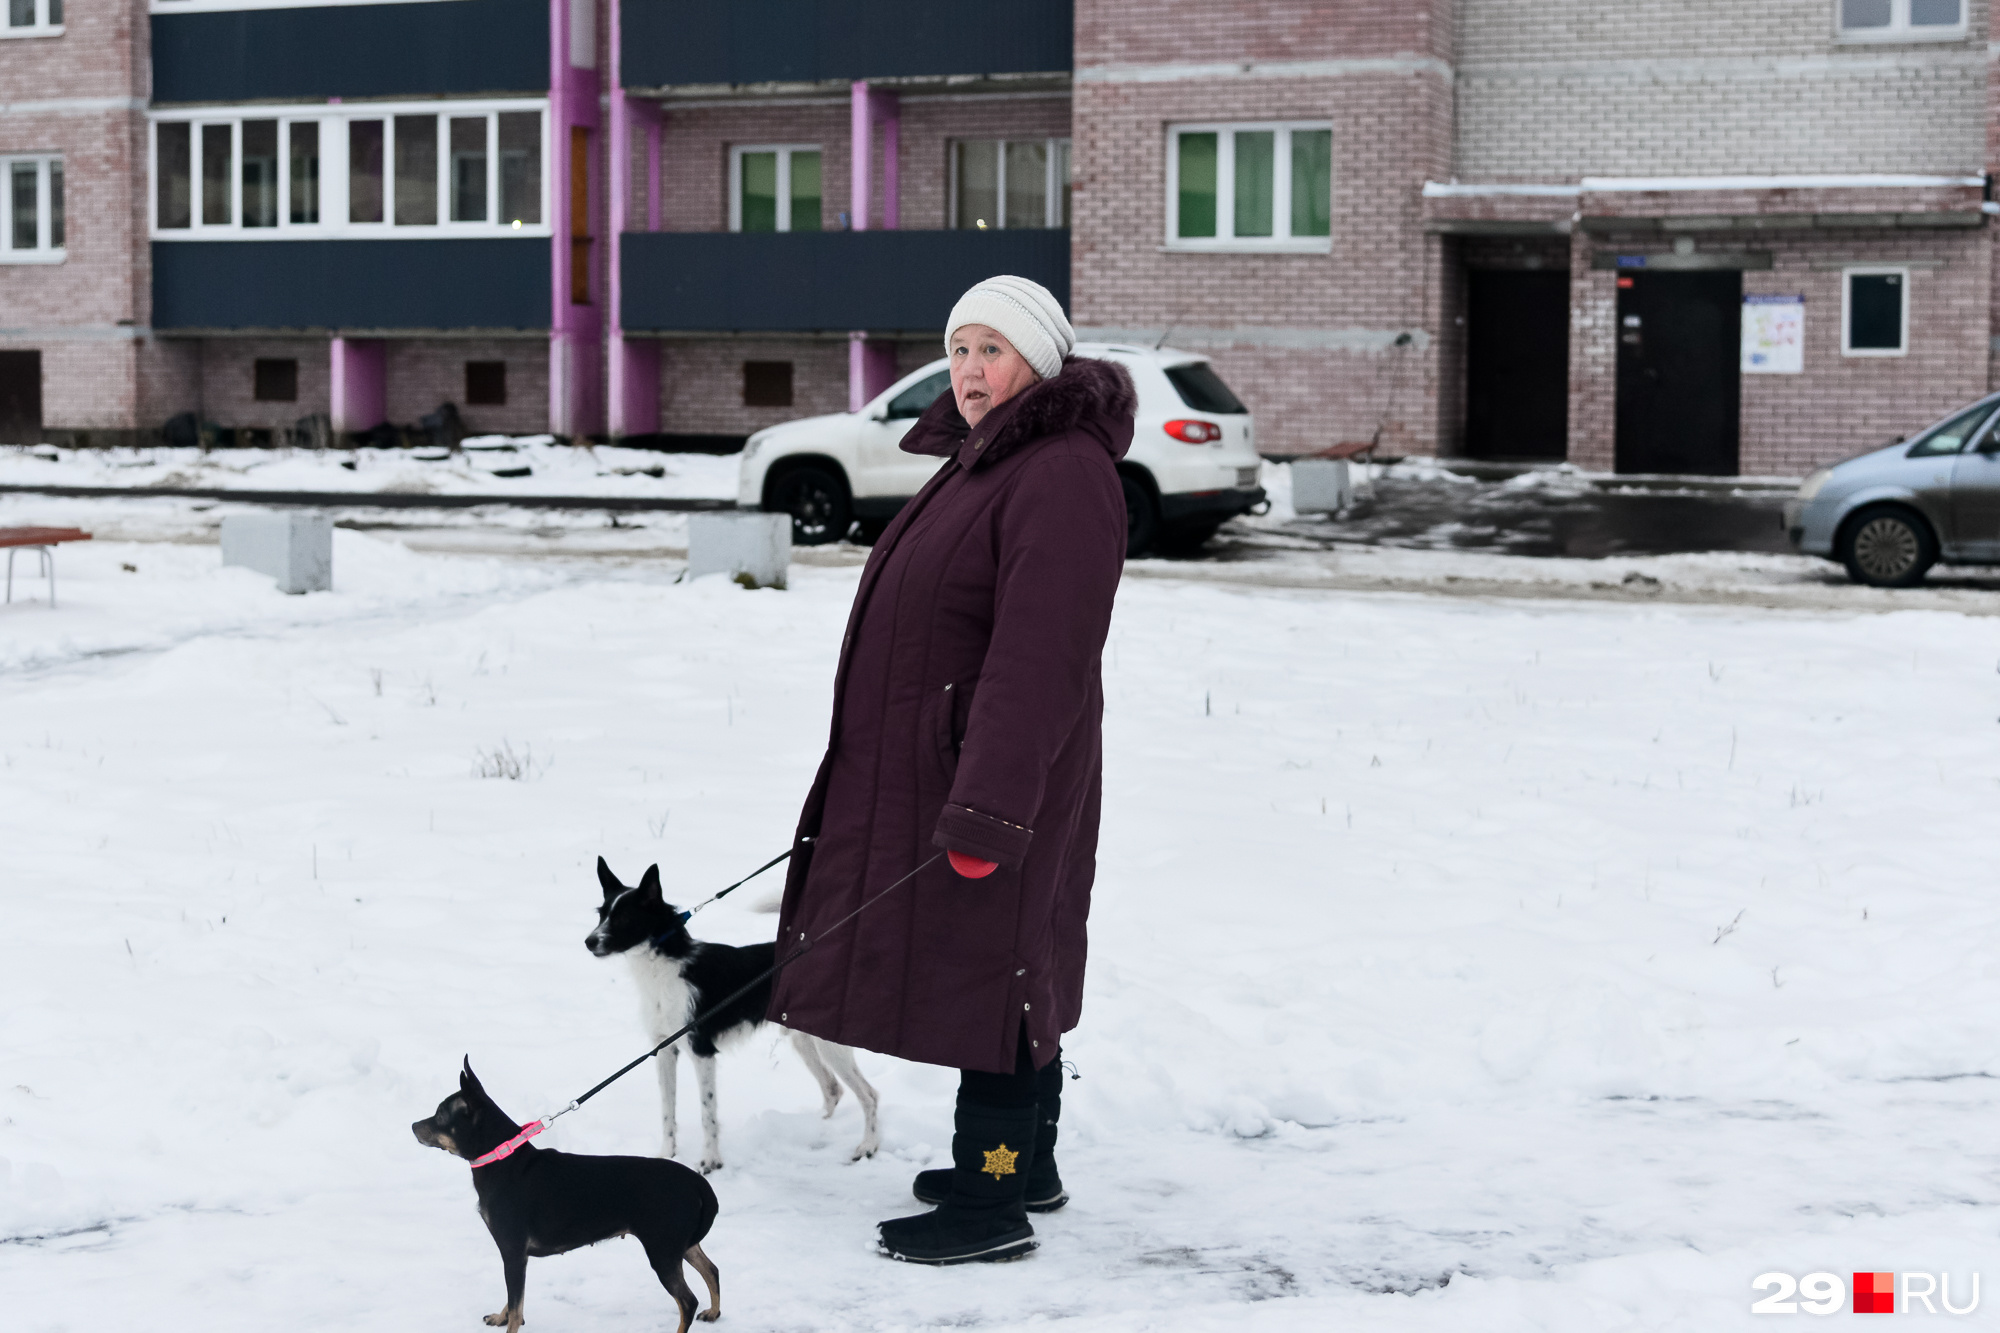 Пенсионерка Надежда Юрьевна раньше жила в деревянном доме на Никольском проспекте, а теперь у нее новая квартира с удобствами, которую она делит с дочкой, внуками и двумя собаками